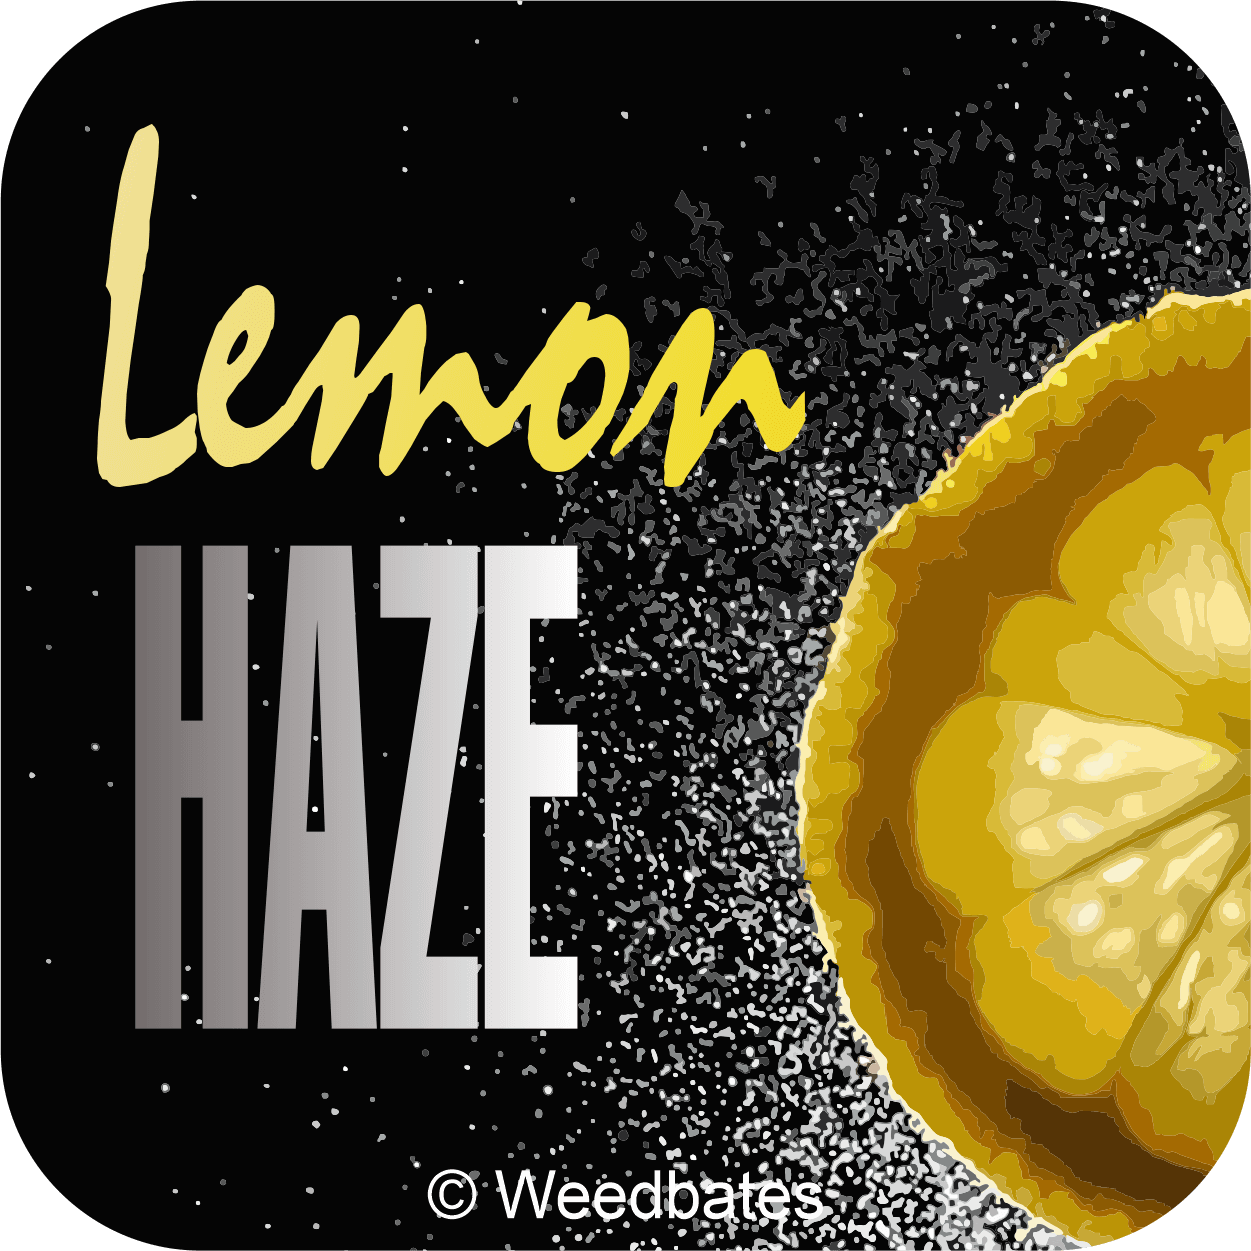 Lemon Haze cannabis strain